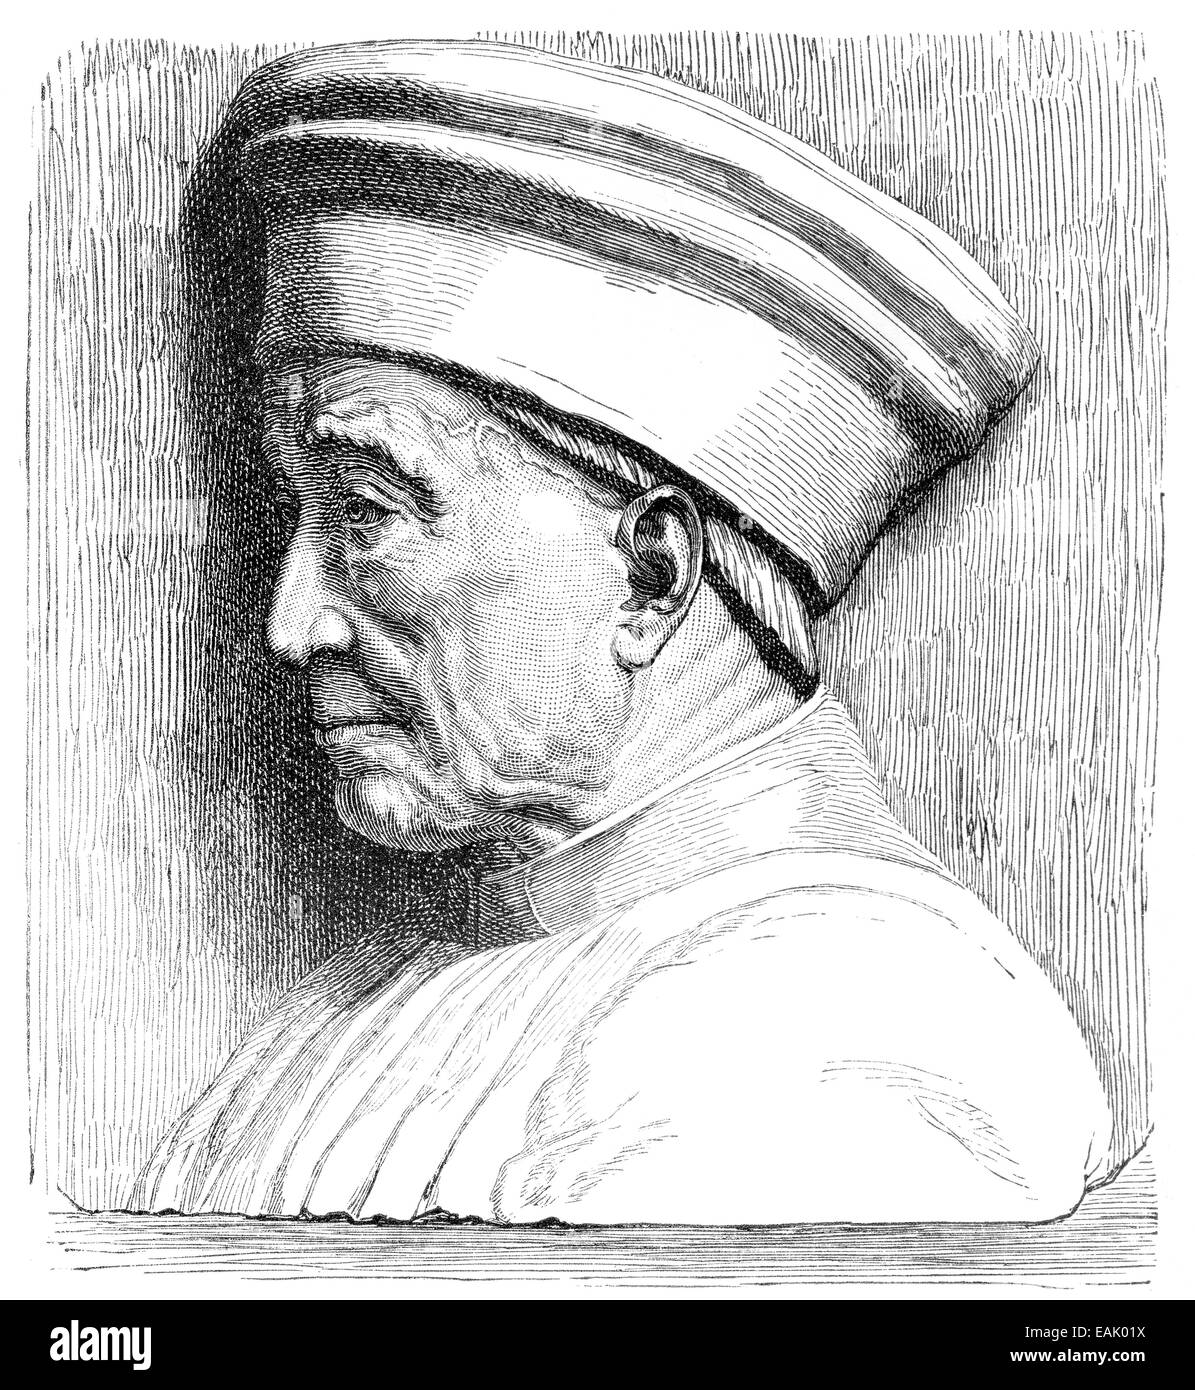 Cosimo dem älteren, auch bekannt als Cosimo de Medici, 1389-1464, Porträt von Cosimo der Alte Oder Cosimo de' Medici, 1389-1464 Stockfoto